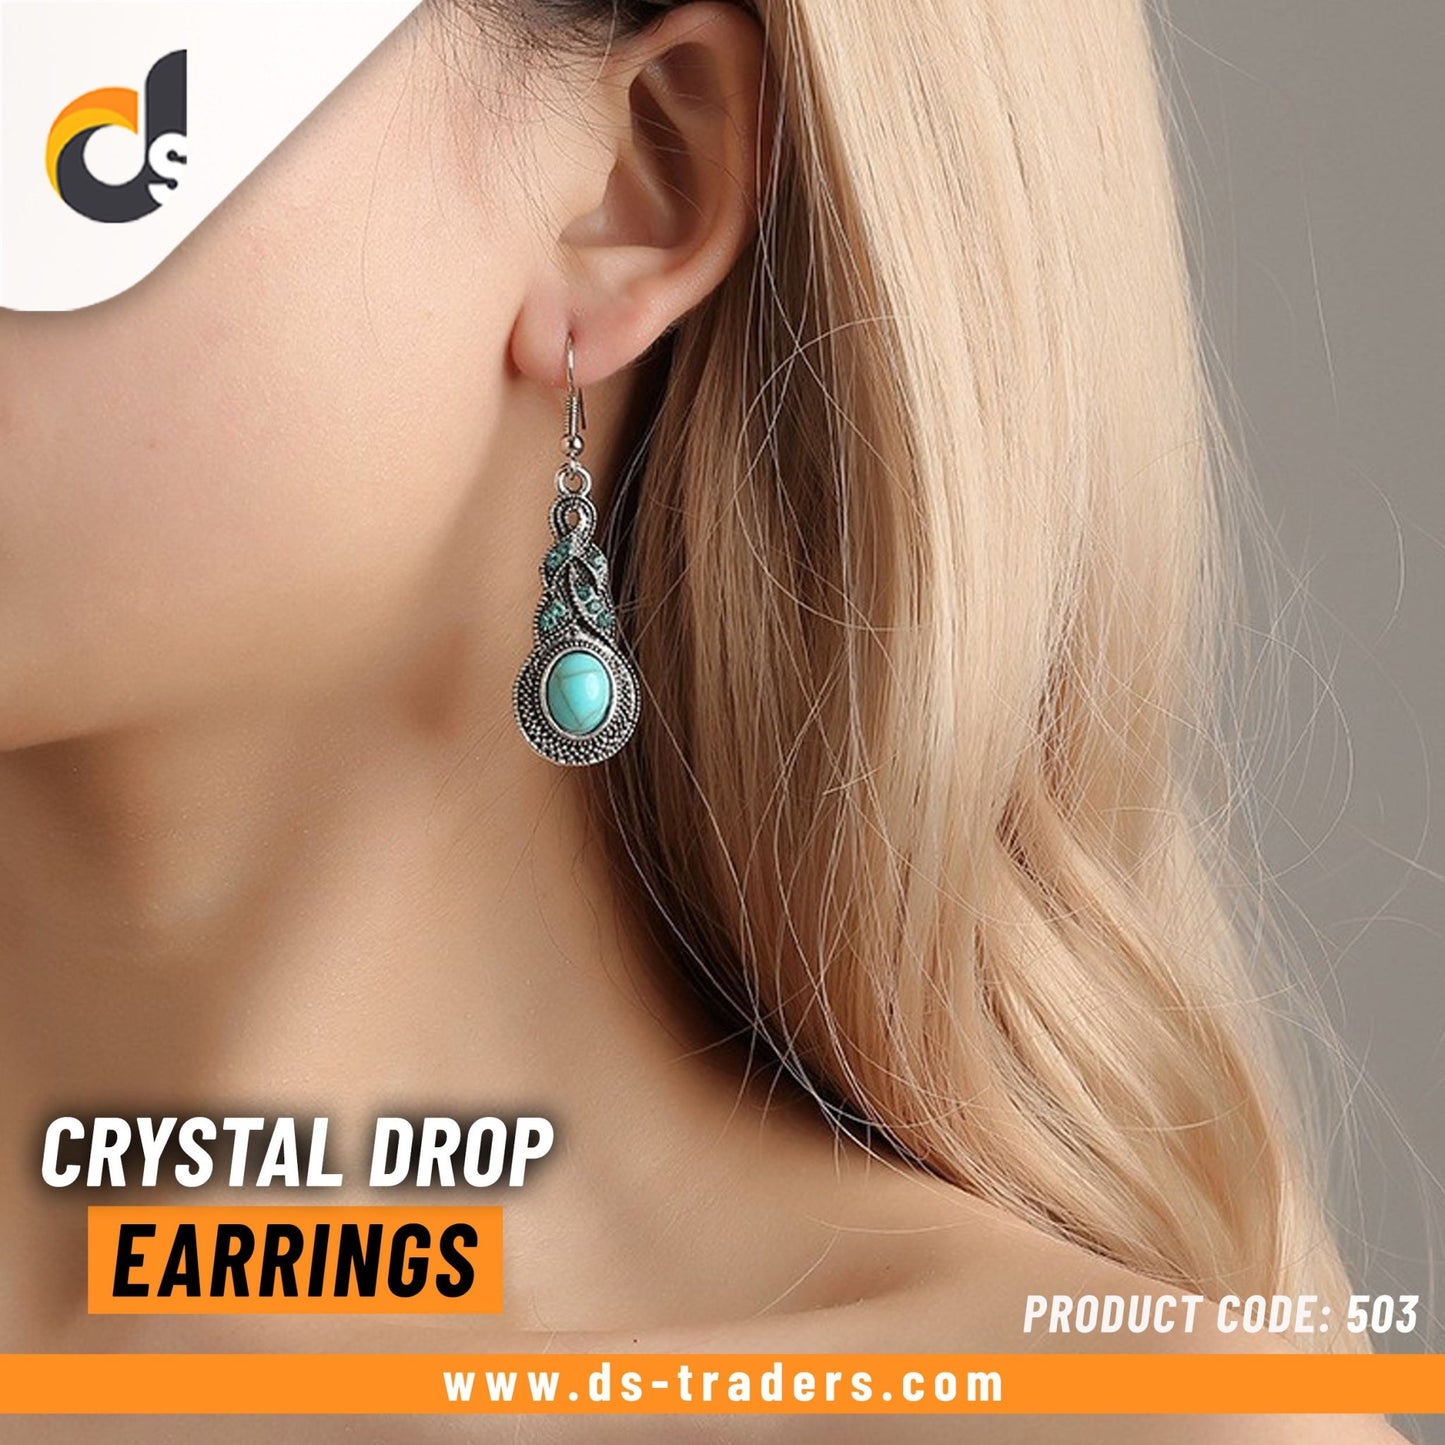 Crystal Drop Earrings - DS Traders